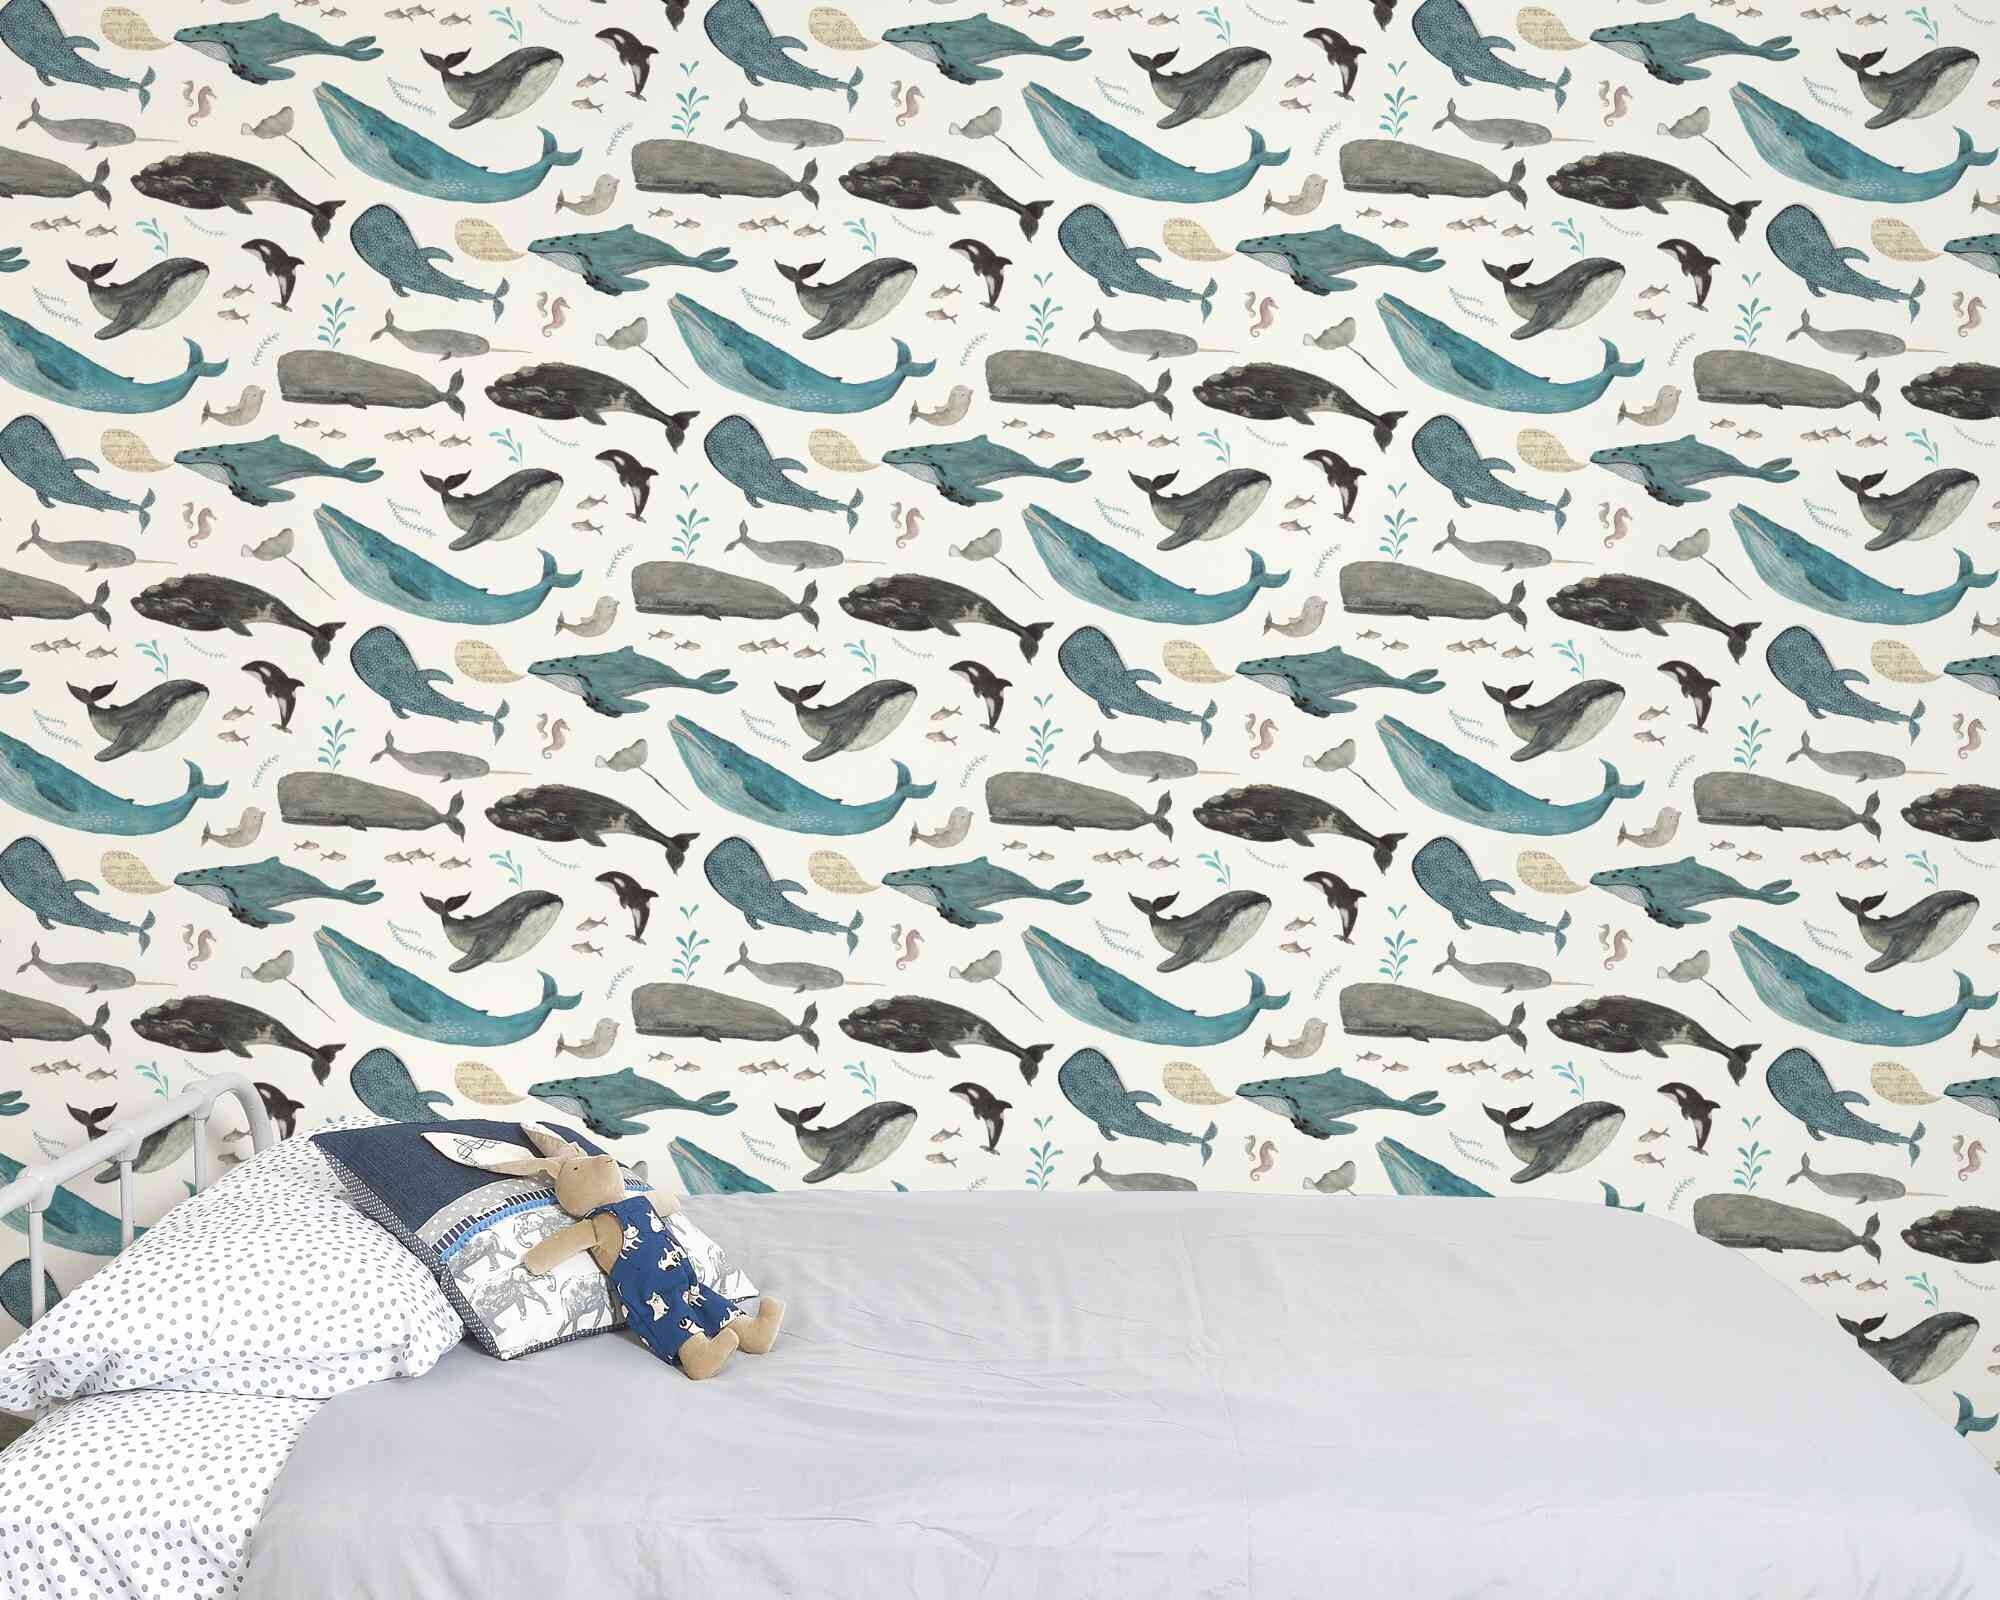 Whale art wallpaper on white